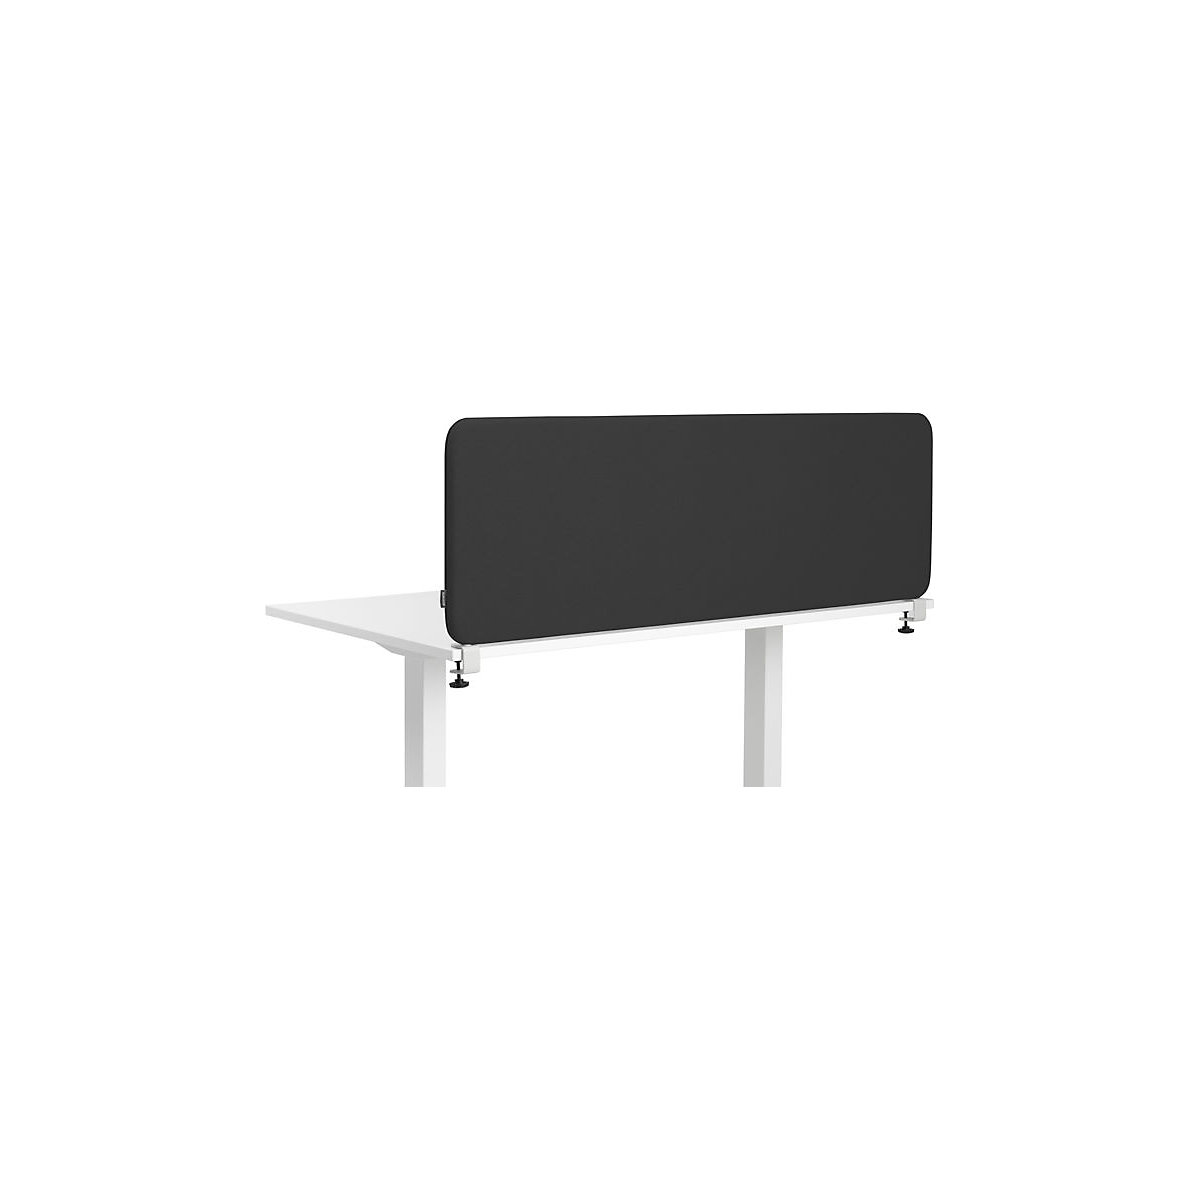 Softline Salsa acoustic desk partition, HxW 450 x 1600 mm, fabric, black-2